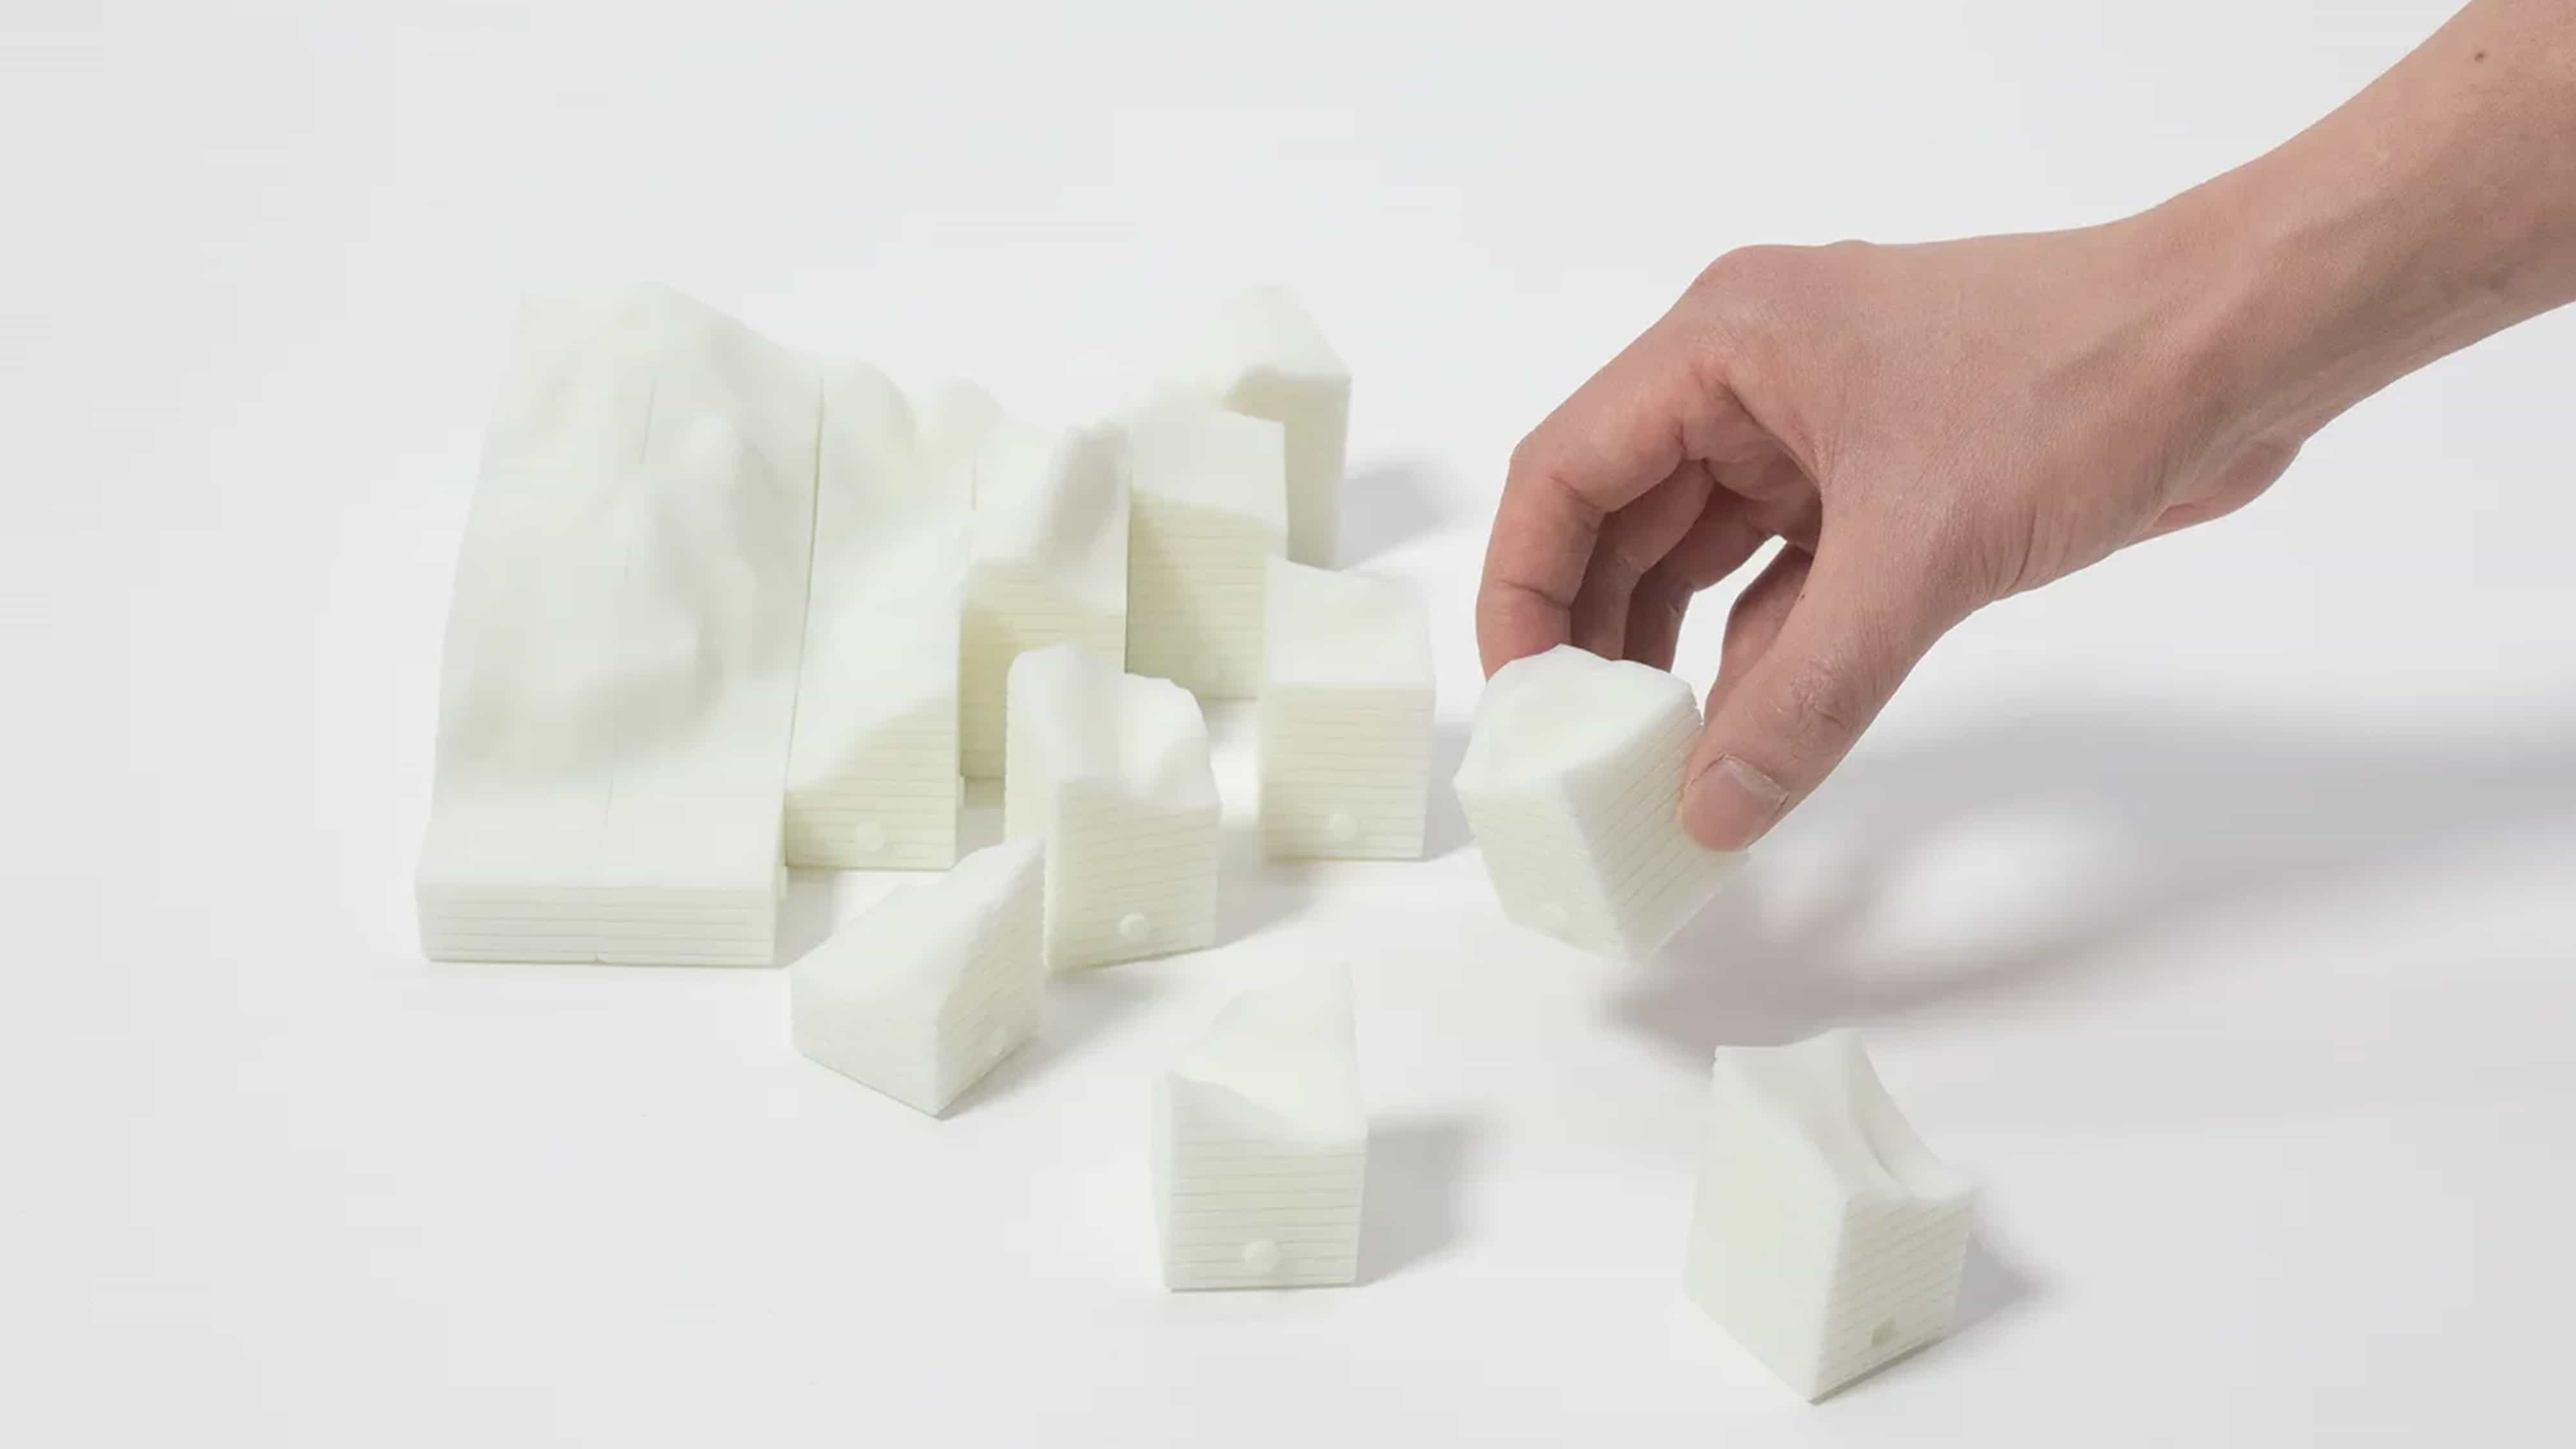 Impresionante diseño de rompecabezas 3D podría ser un cambio de juego